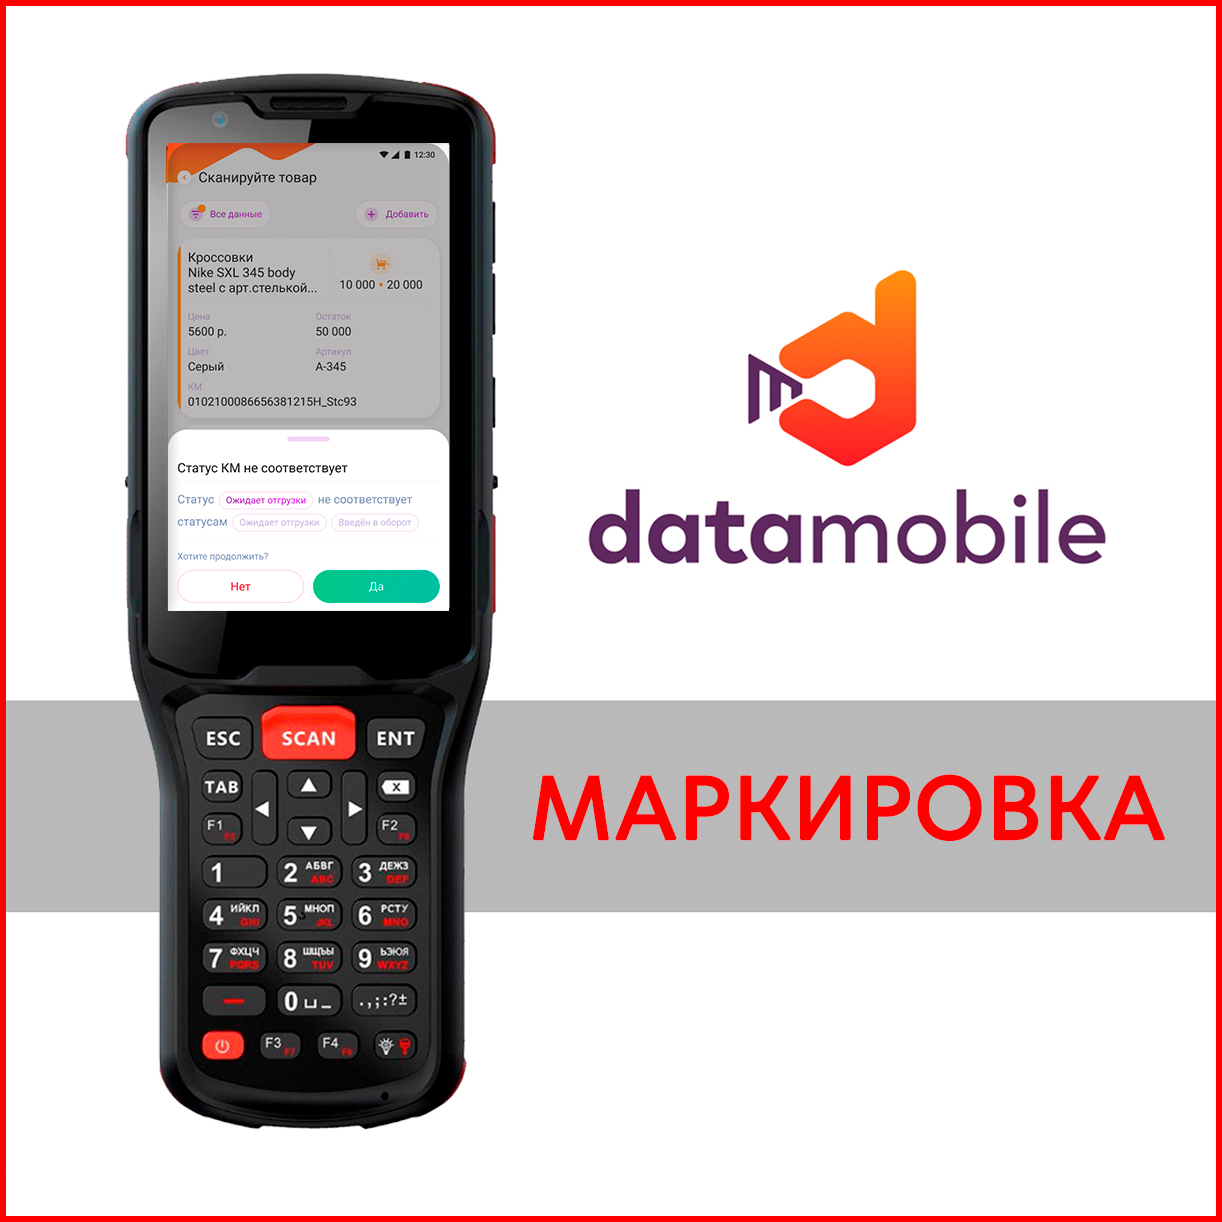 Datamobile маркировка - мобильная автоматизация товара, подлежащего обязательной маркировке.